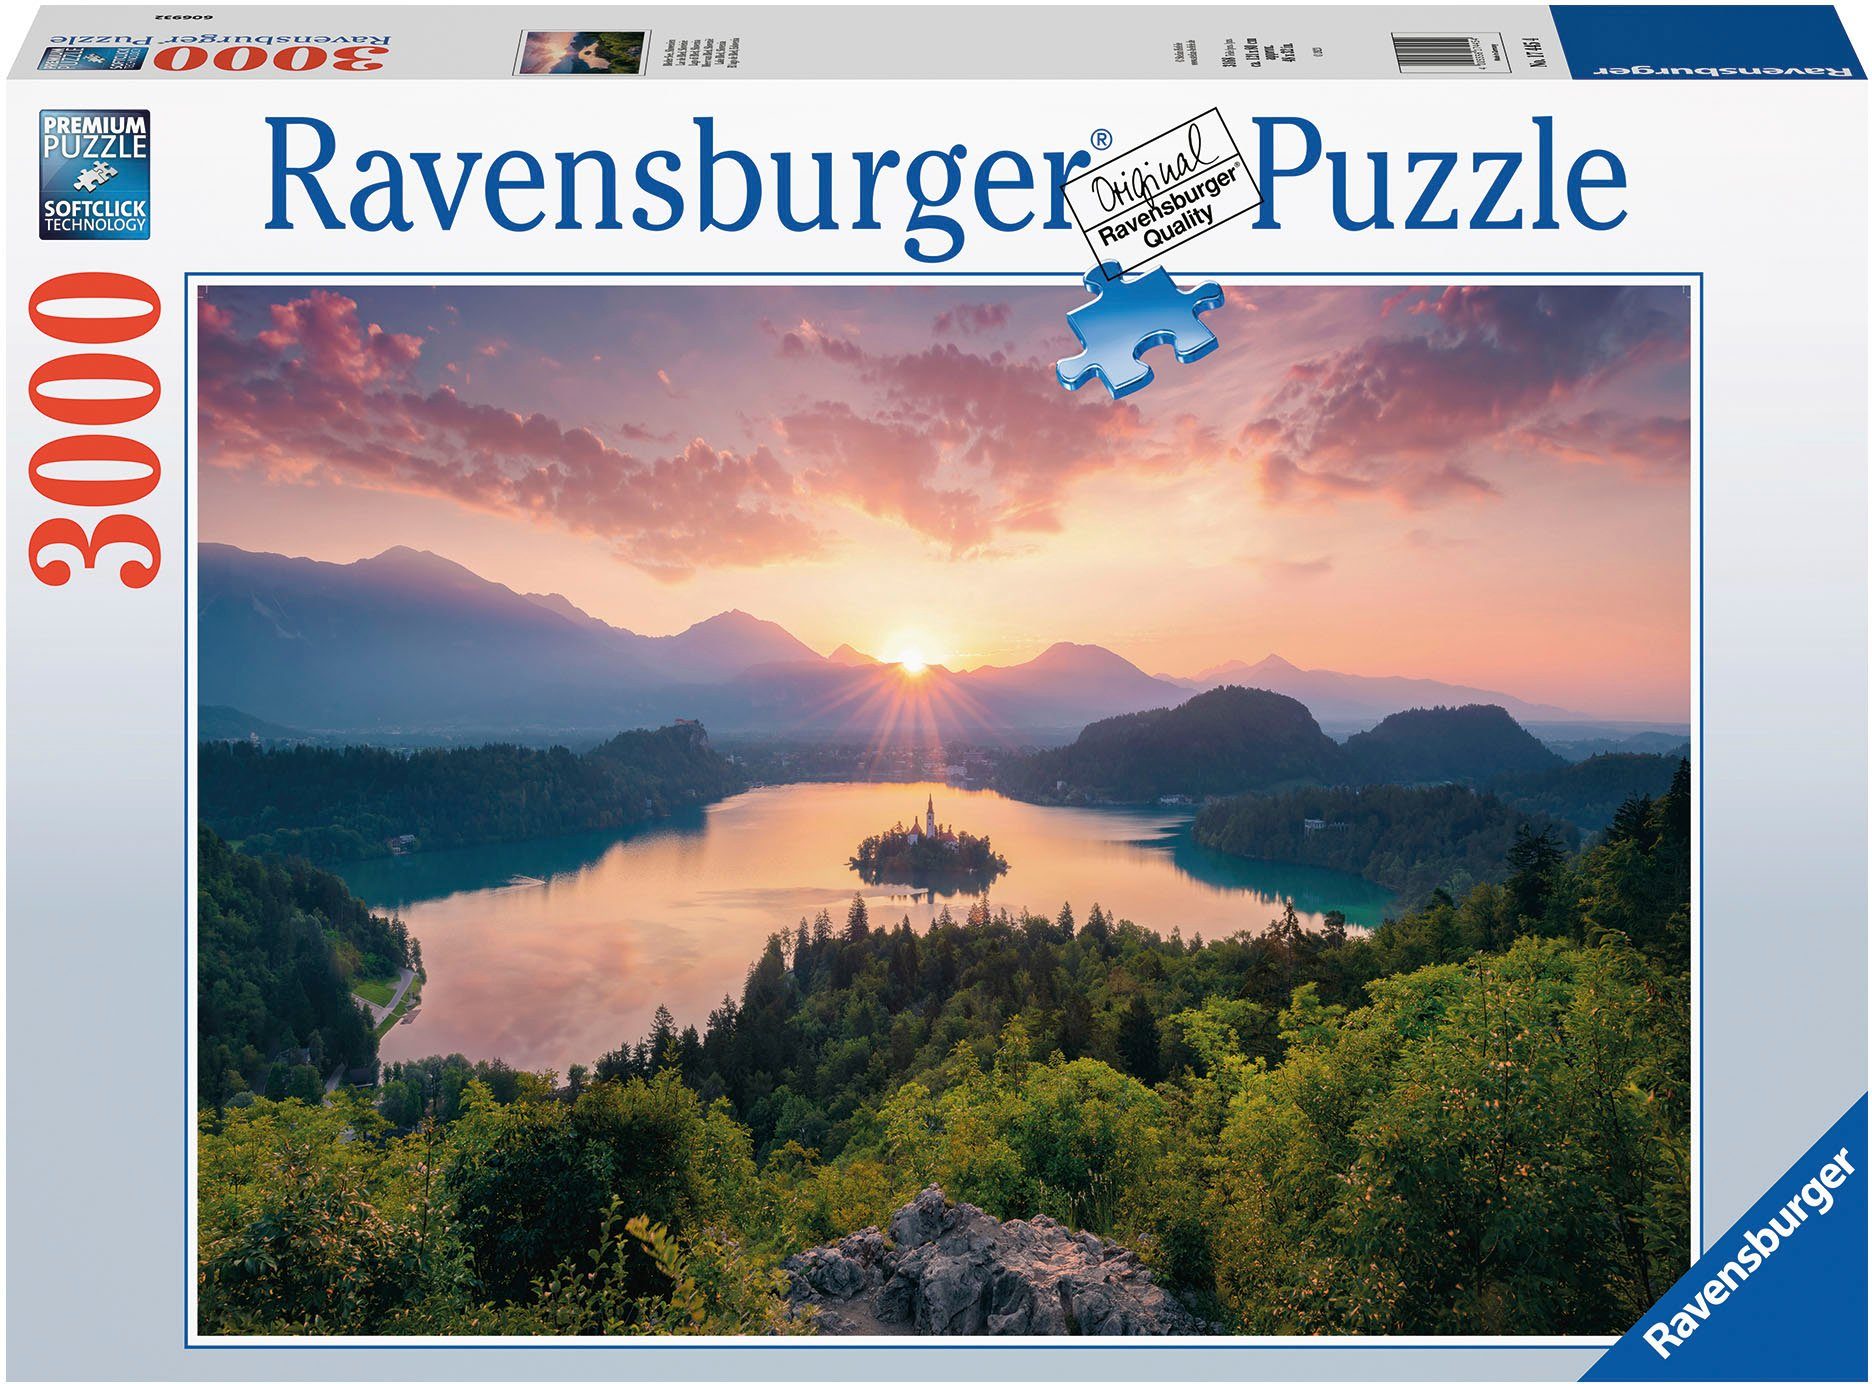 Ravensburger Puzzle Bleder See, Slowenien, 3000 Puzzleteile, Made in Germany; FSC®- schützt Wald - weltweit